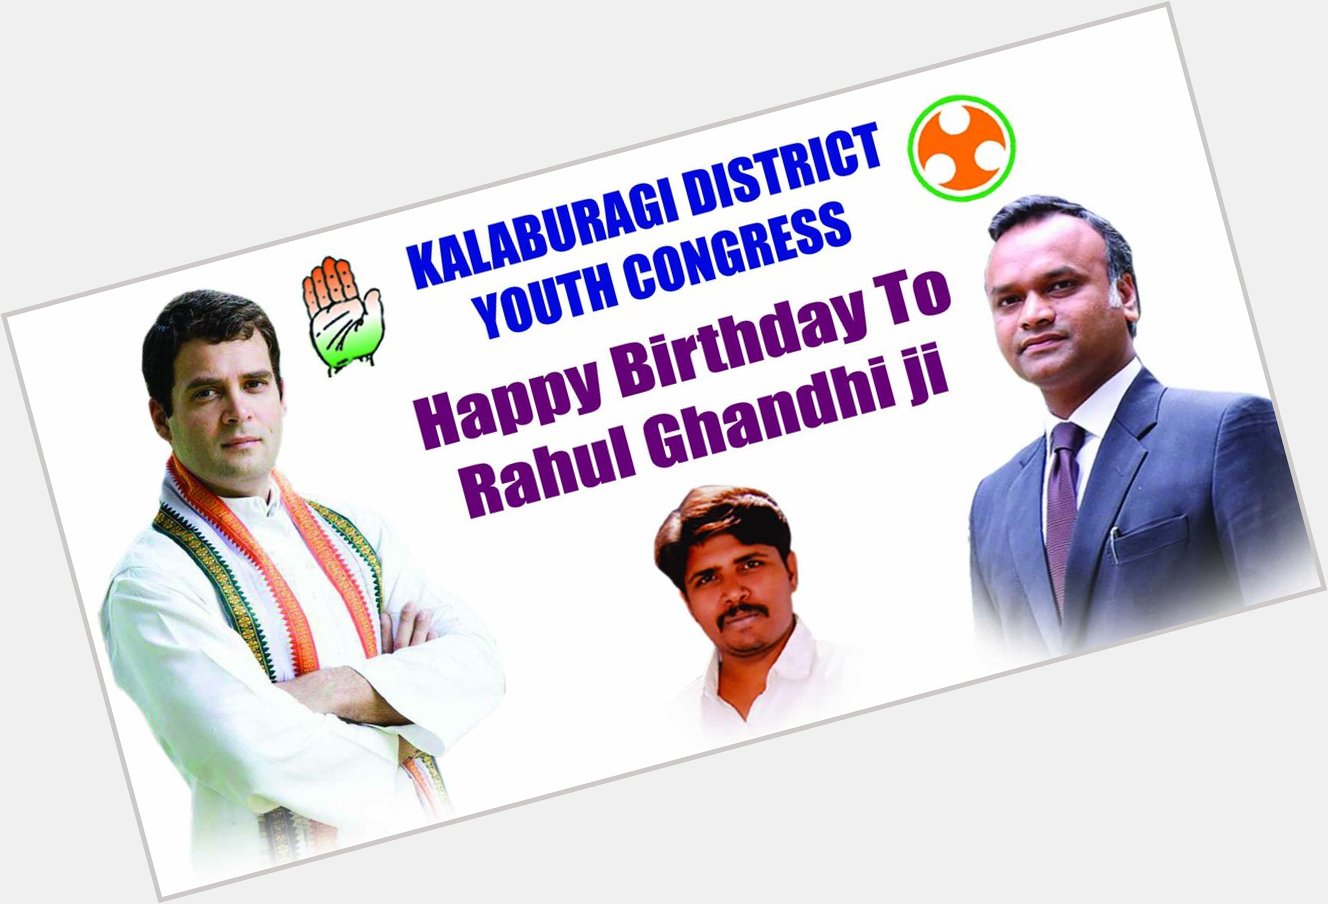 Happy birthday to our beloved leader RAHUL GANDHI ji   